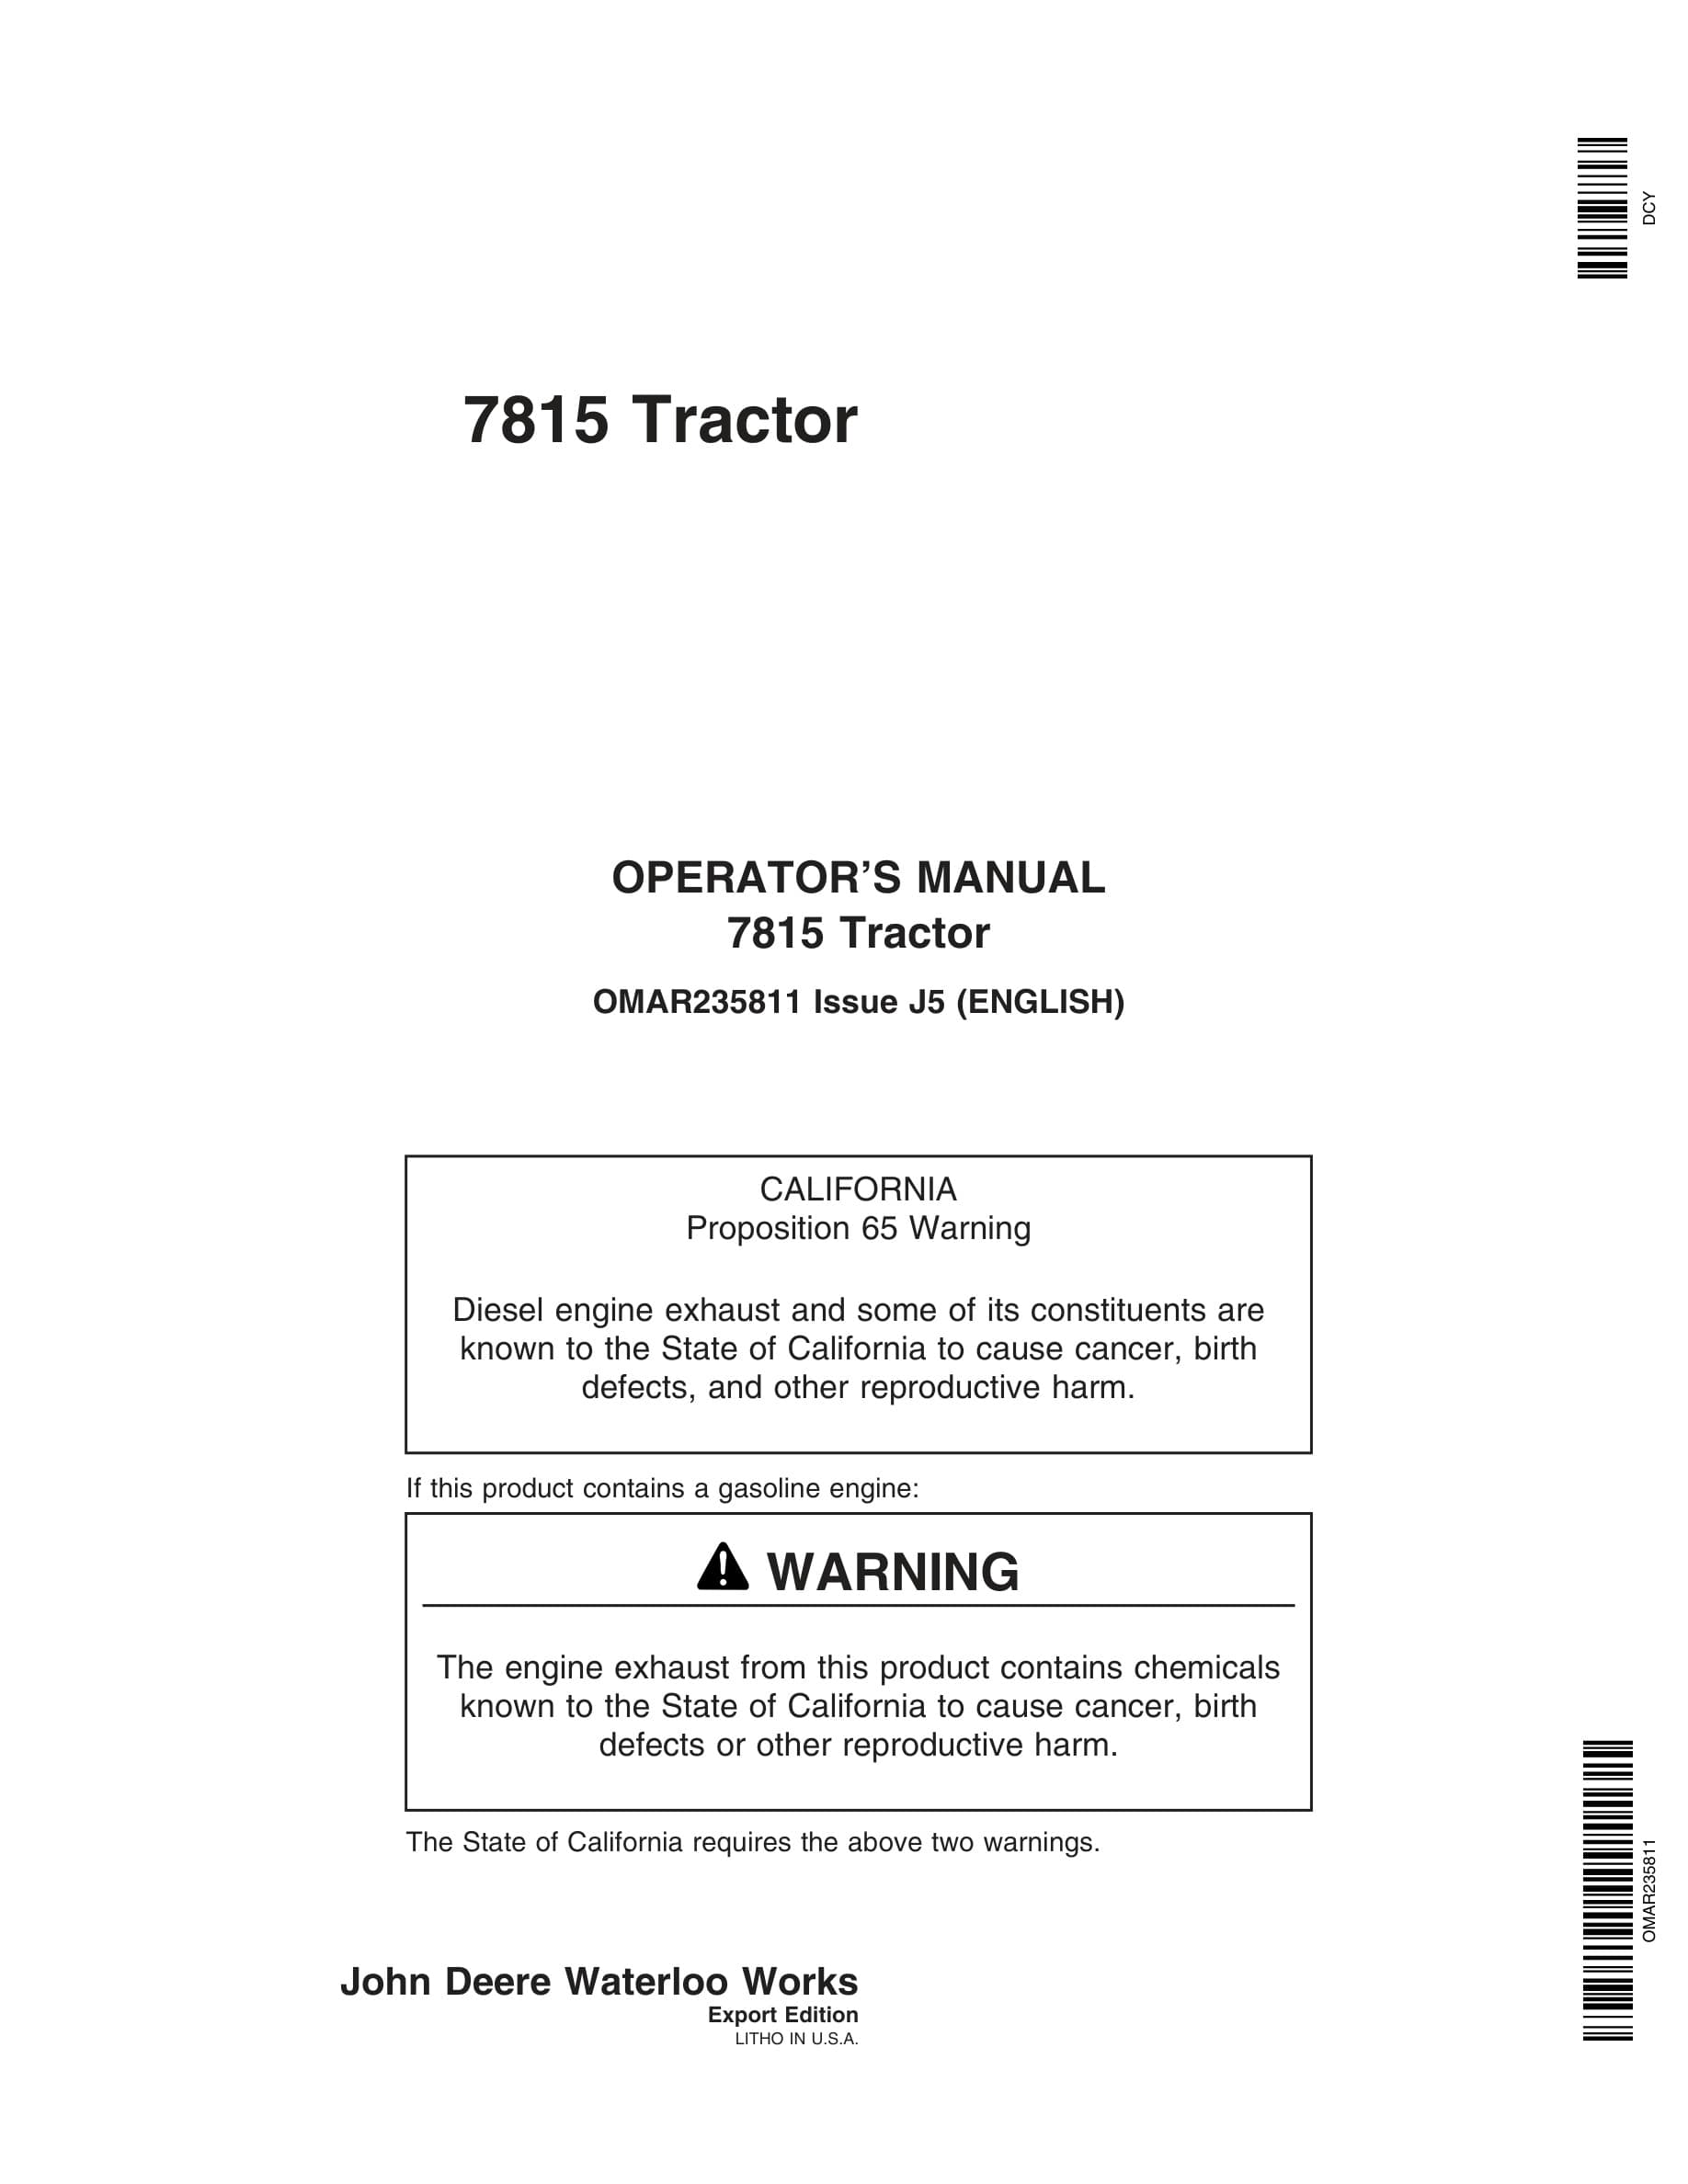 John Deere 7815 Tractors Operator Manual OMAR235811-1